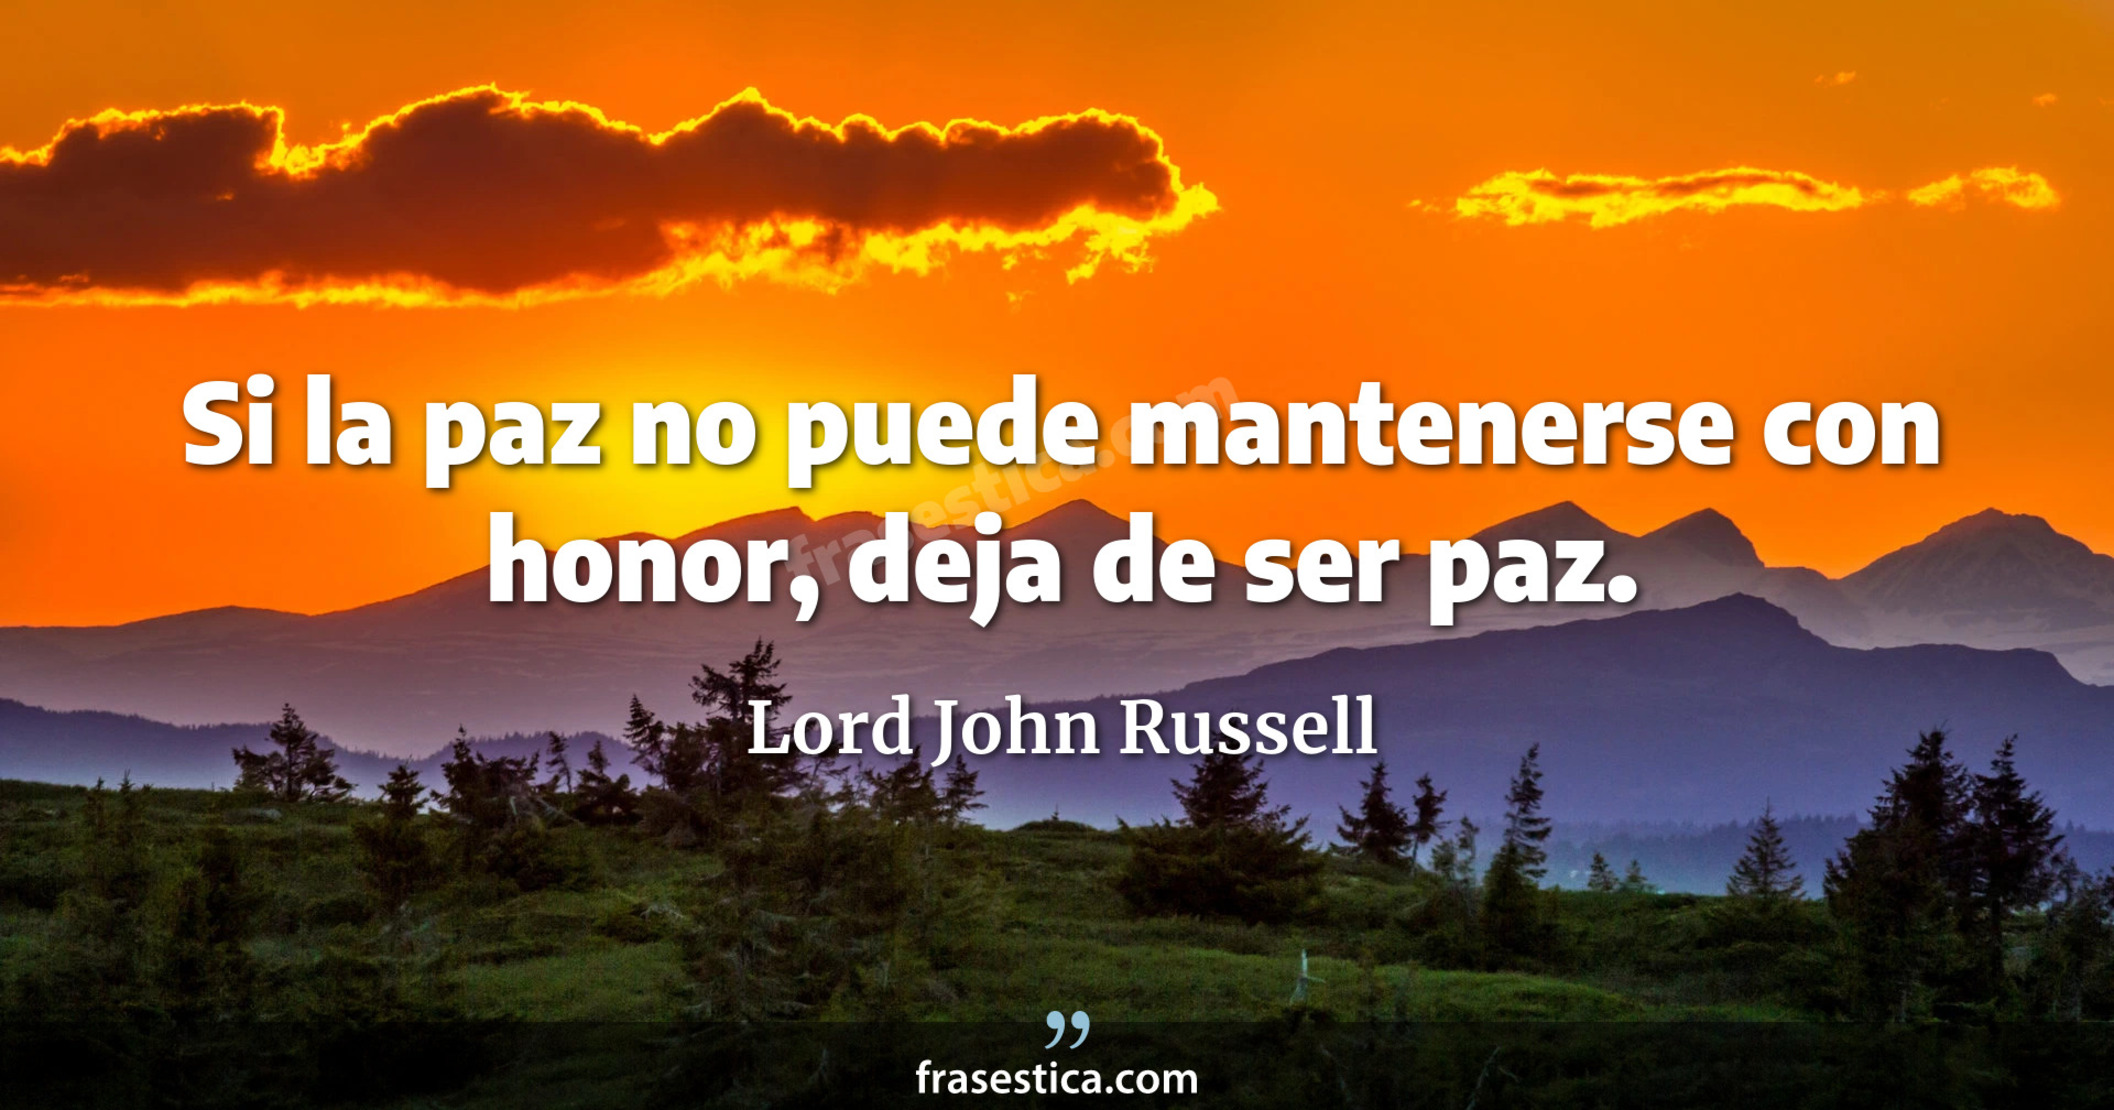 Si la paz no puede mantenerse con honor, deja de ser paz. - Lord John Russell